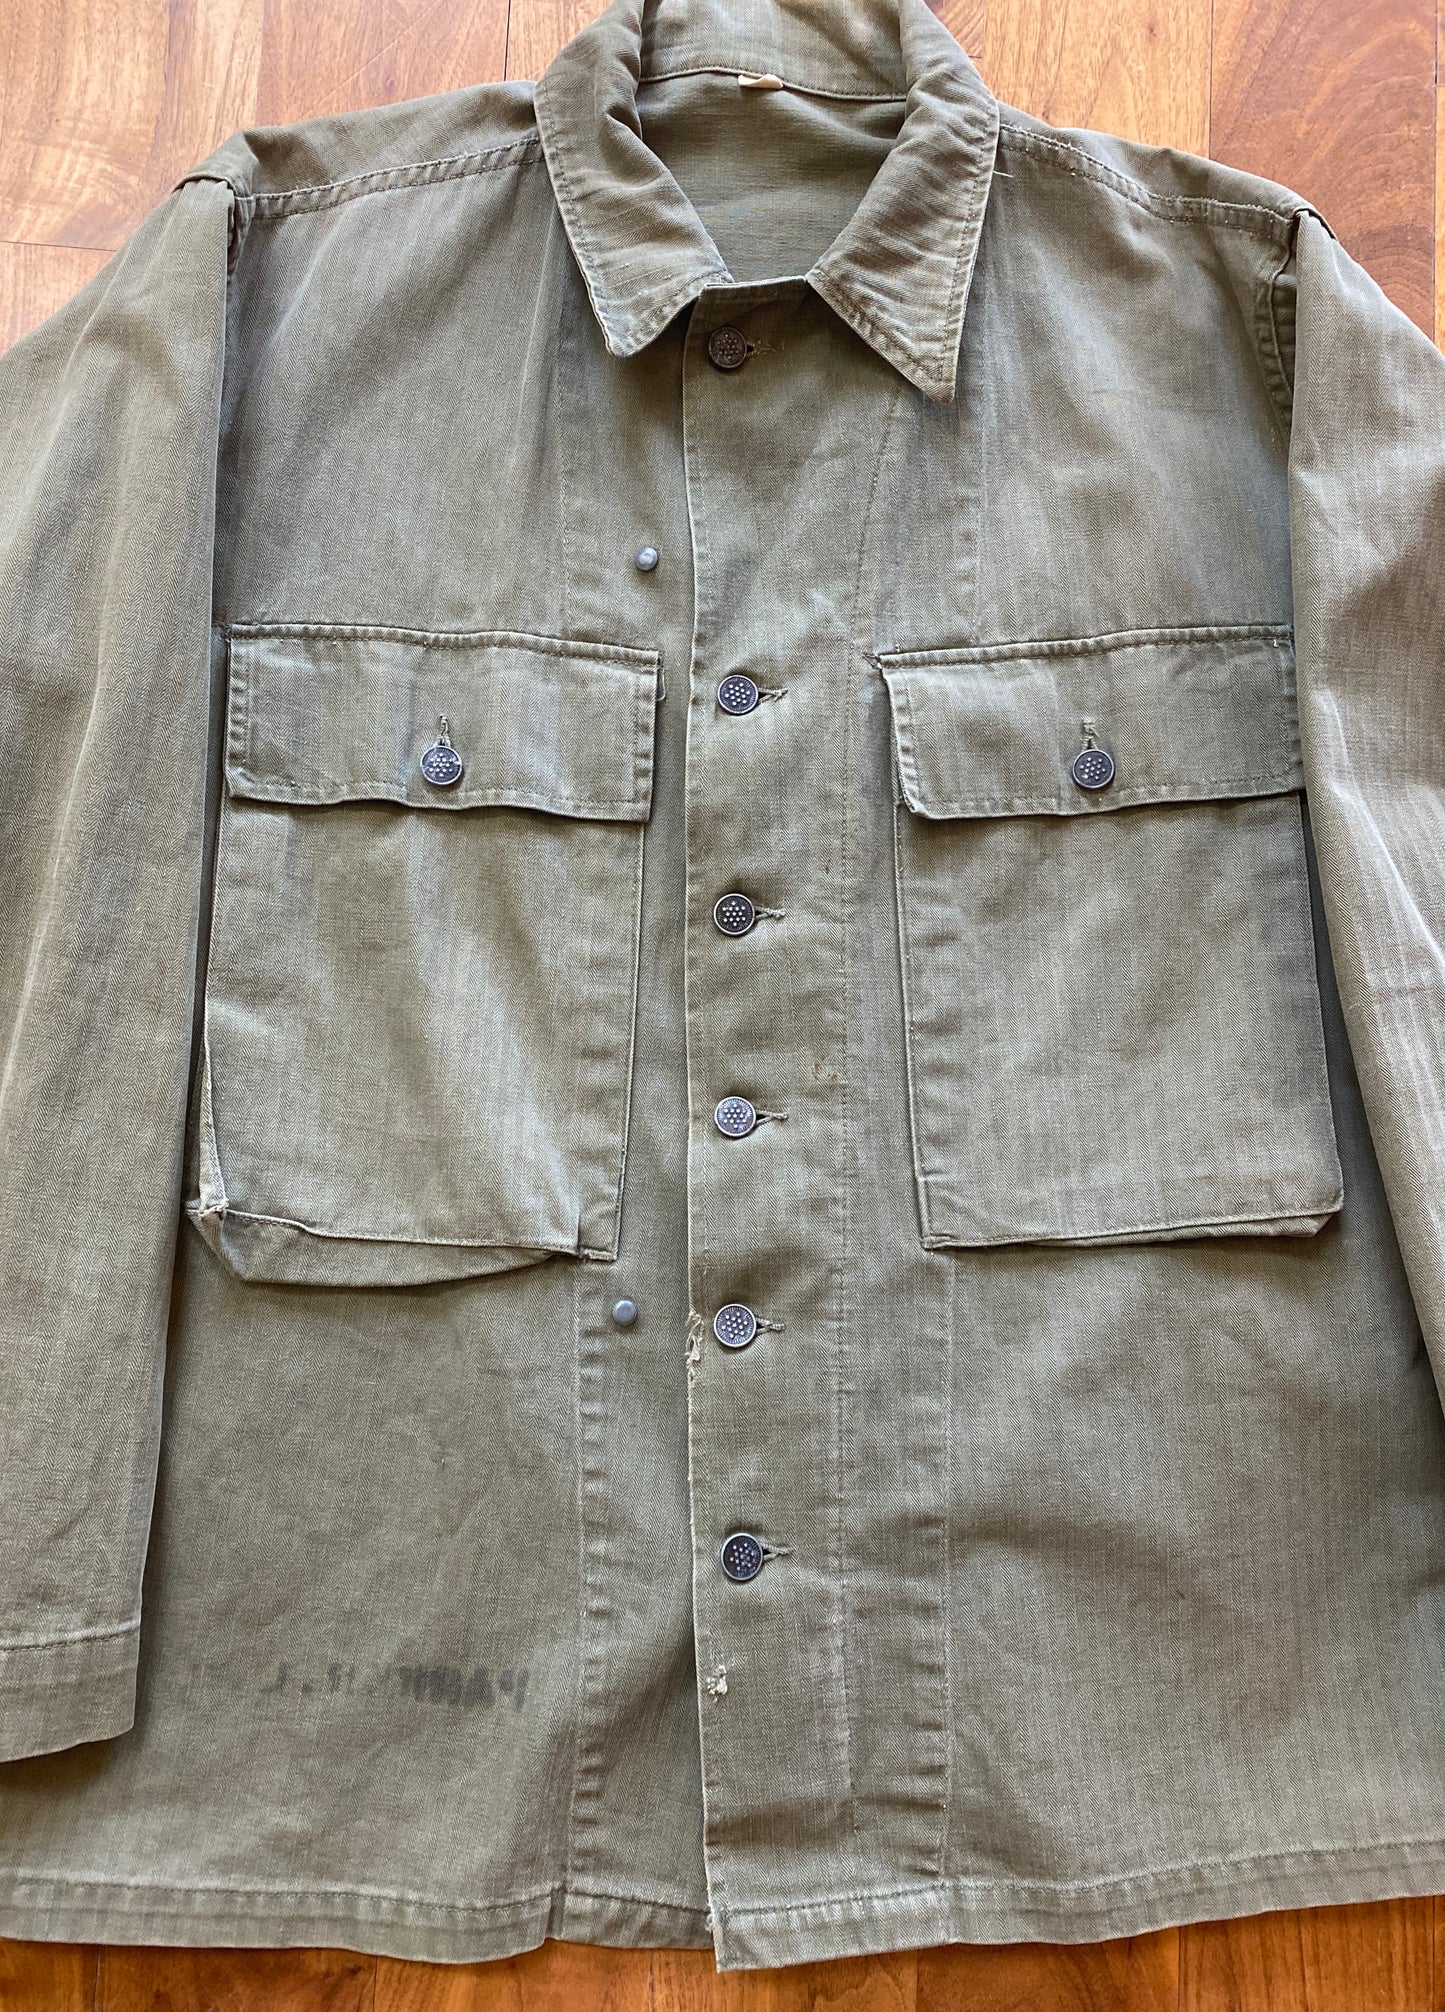 1940s HBT Hard Labor Battalion Prisoner Fatigue Jacket Size 38R